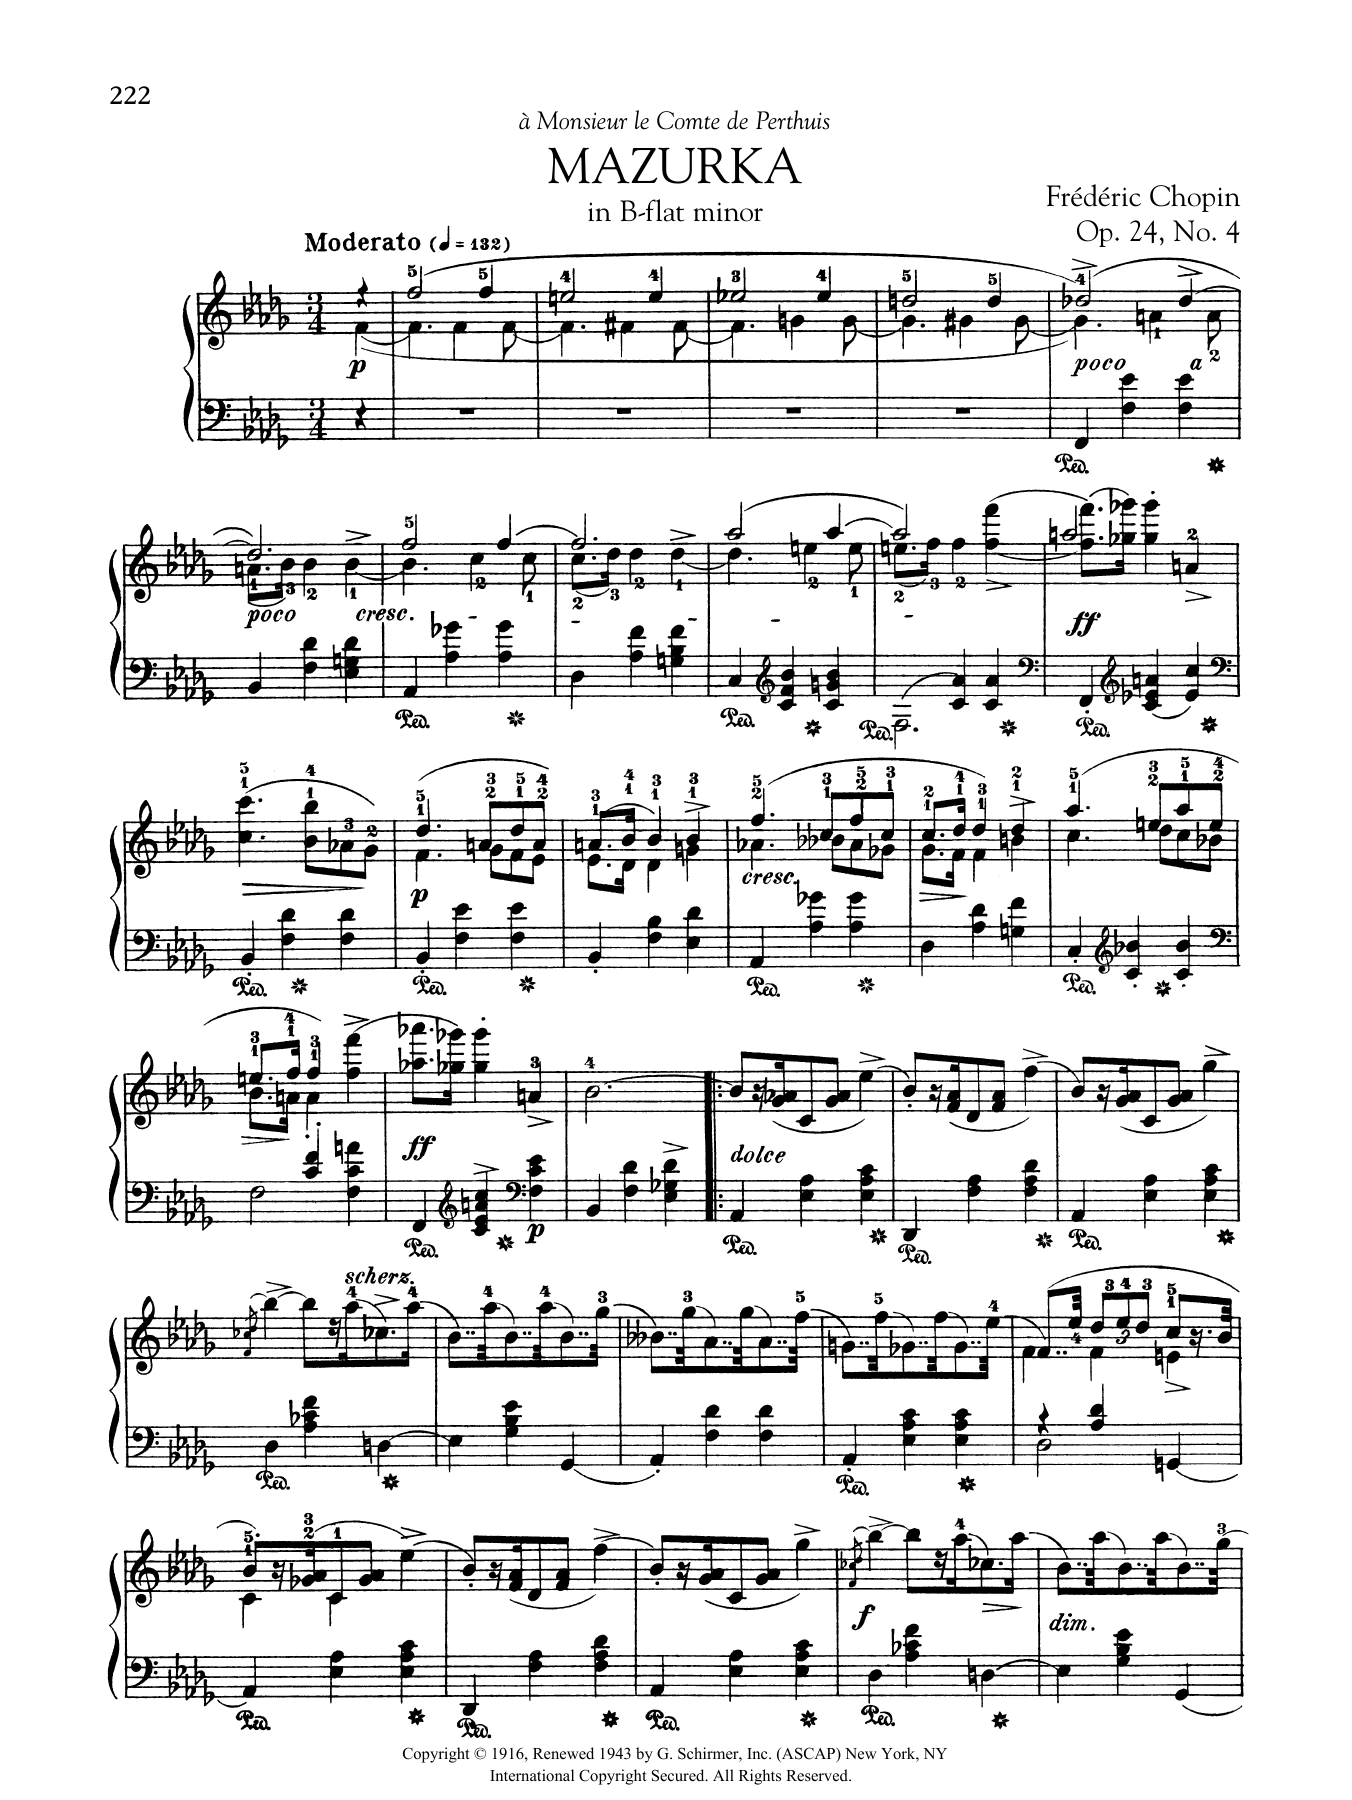 Download Frederic Chopin Mazurka in B-flat minor, Op. 24, No. 4 Sheet Music